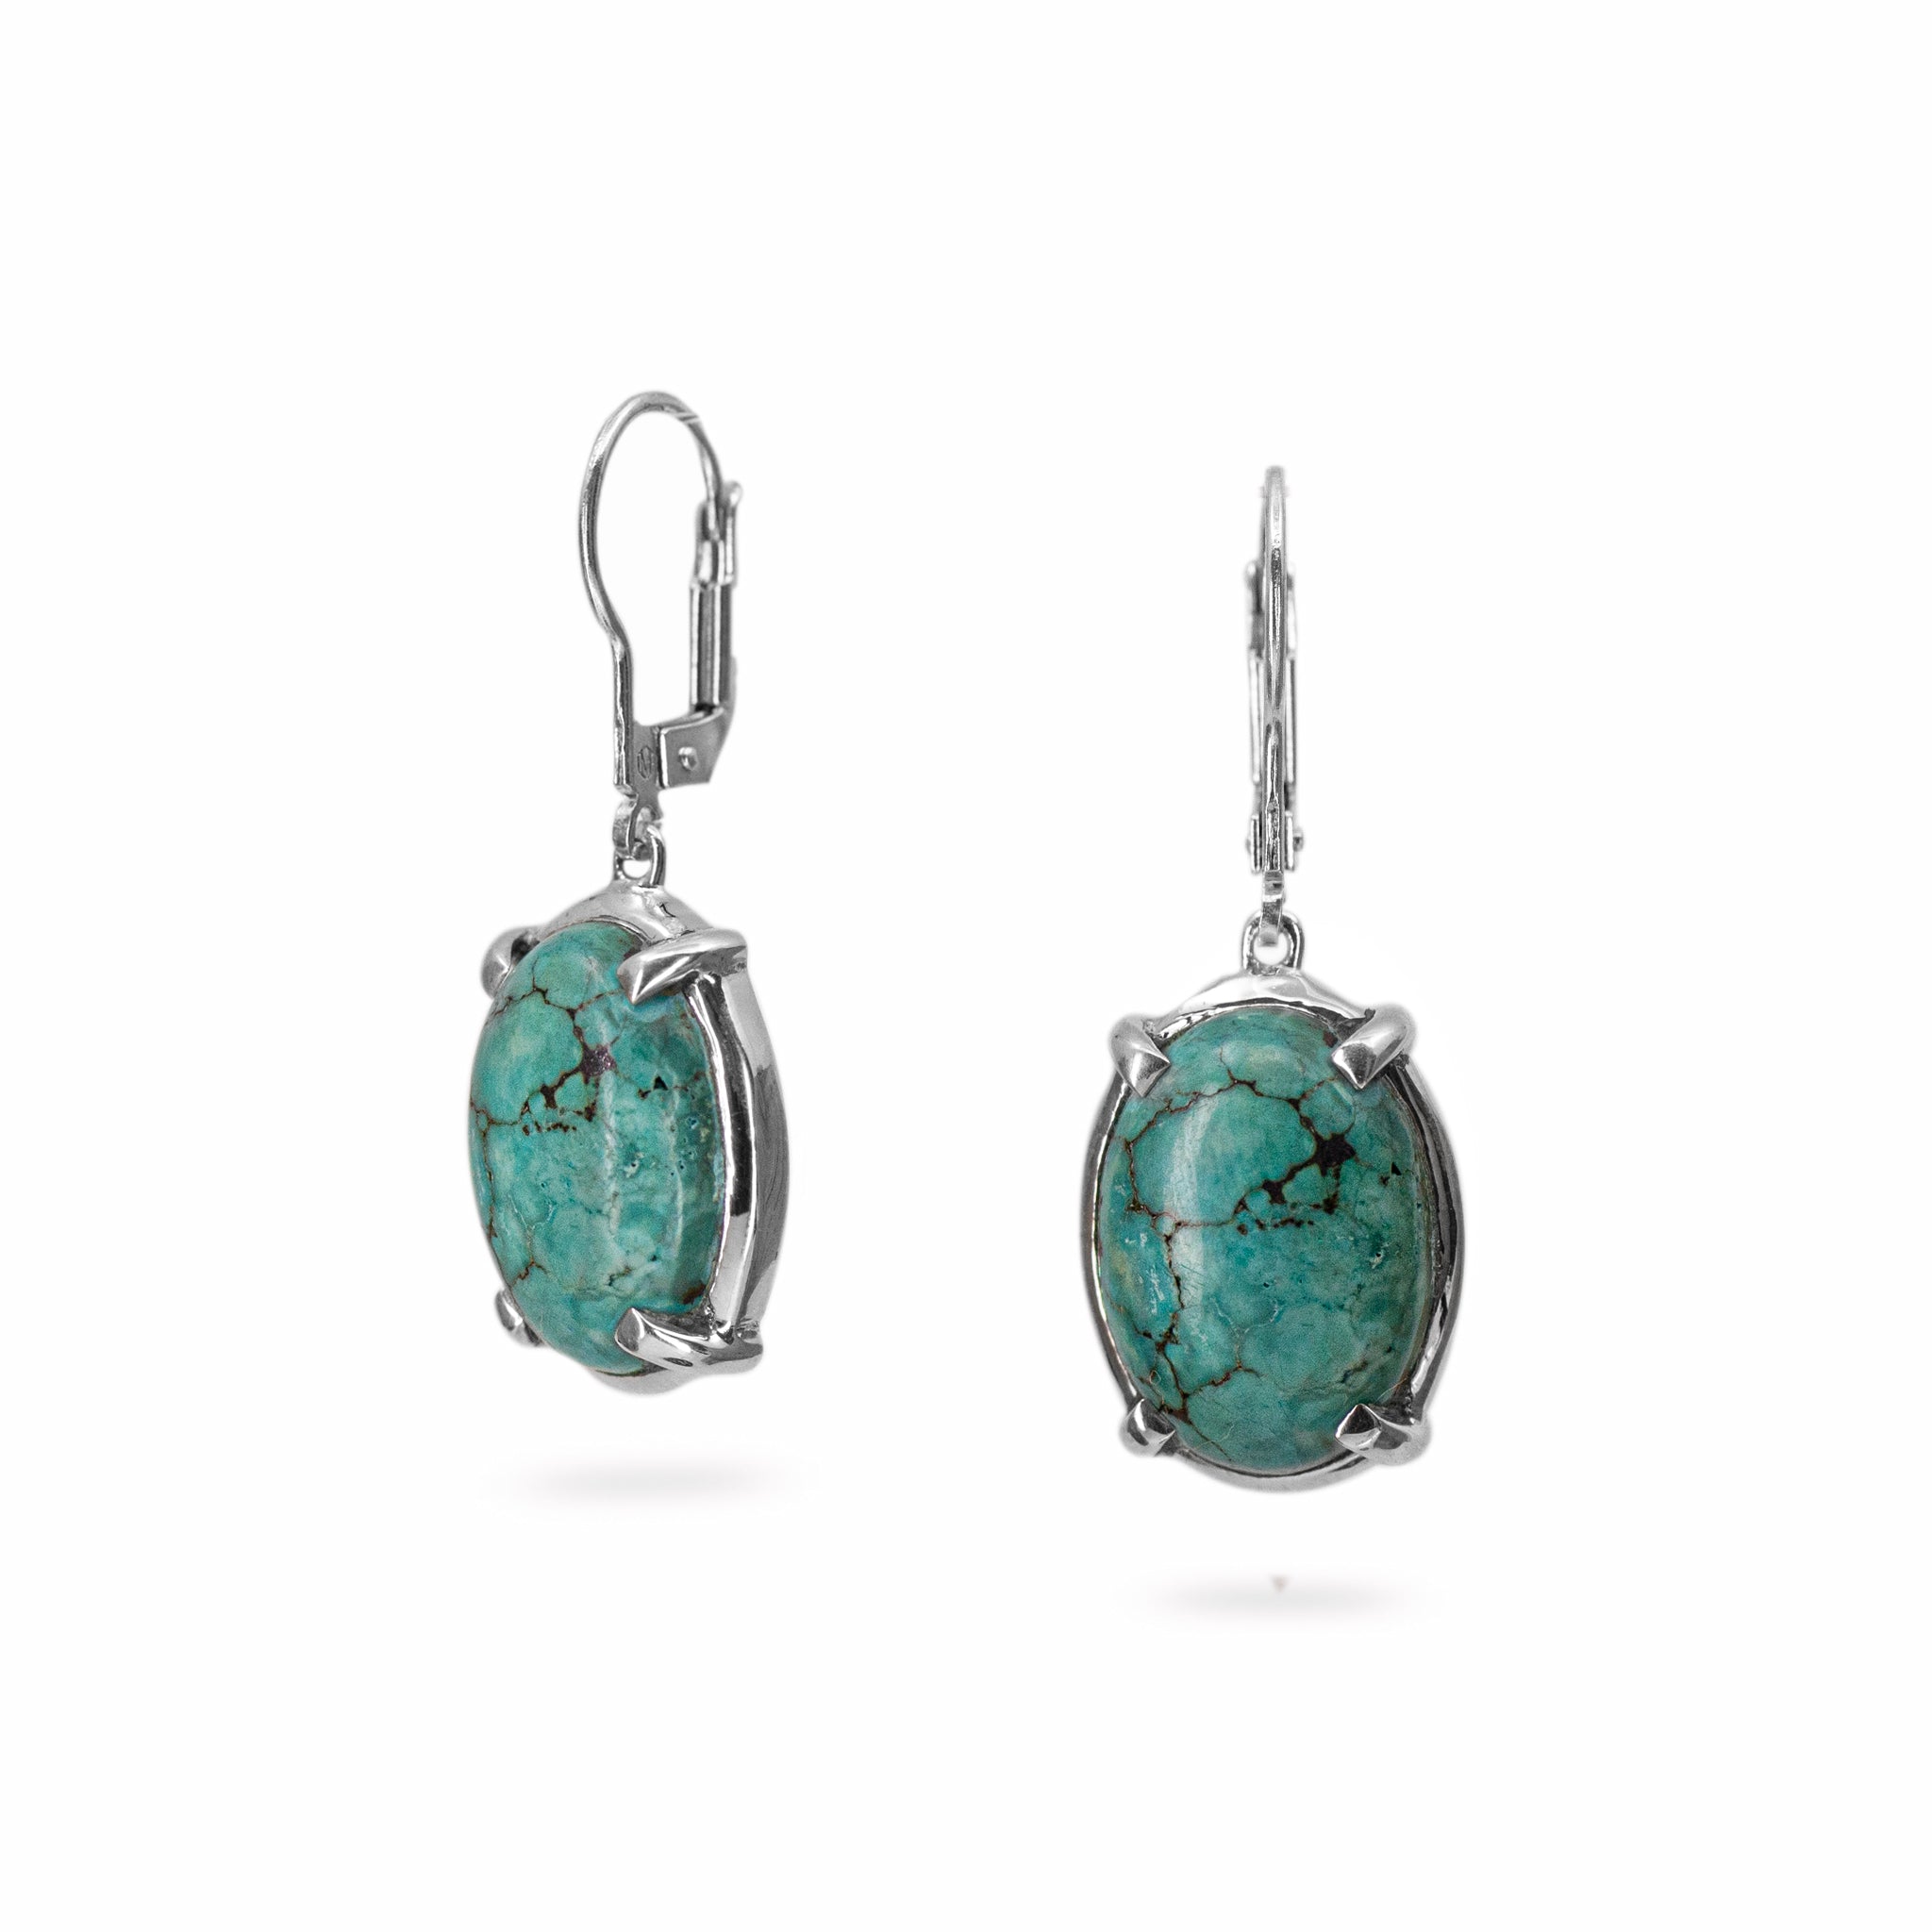 Tibetan turquoise earrings